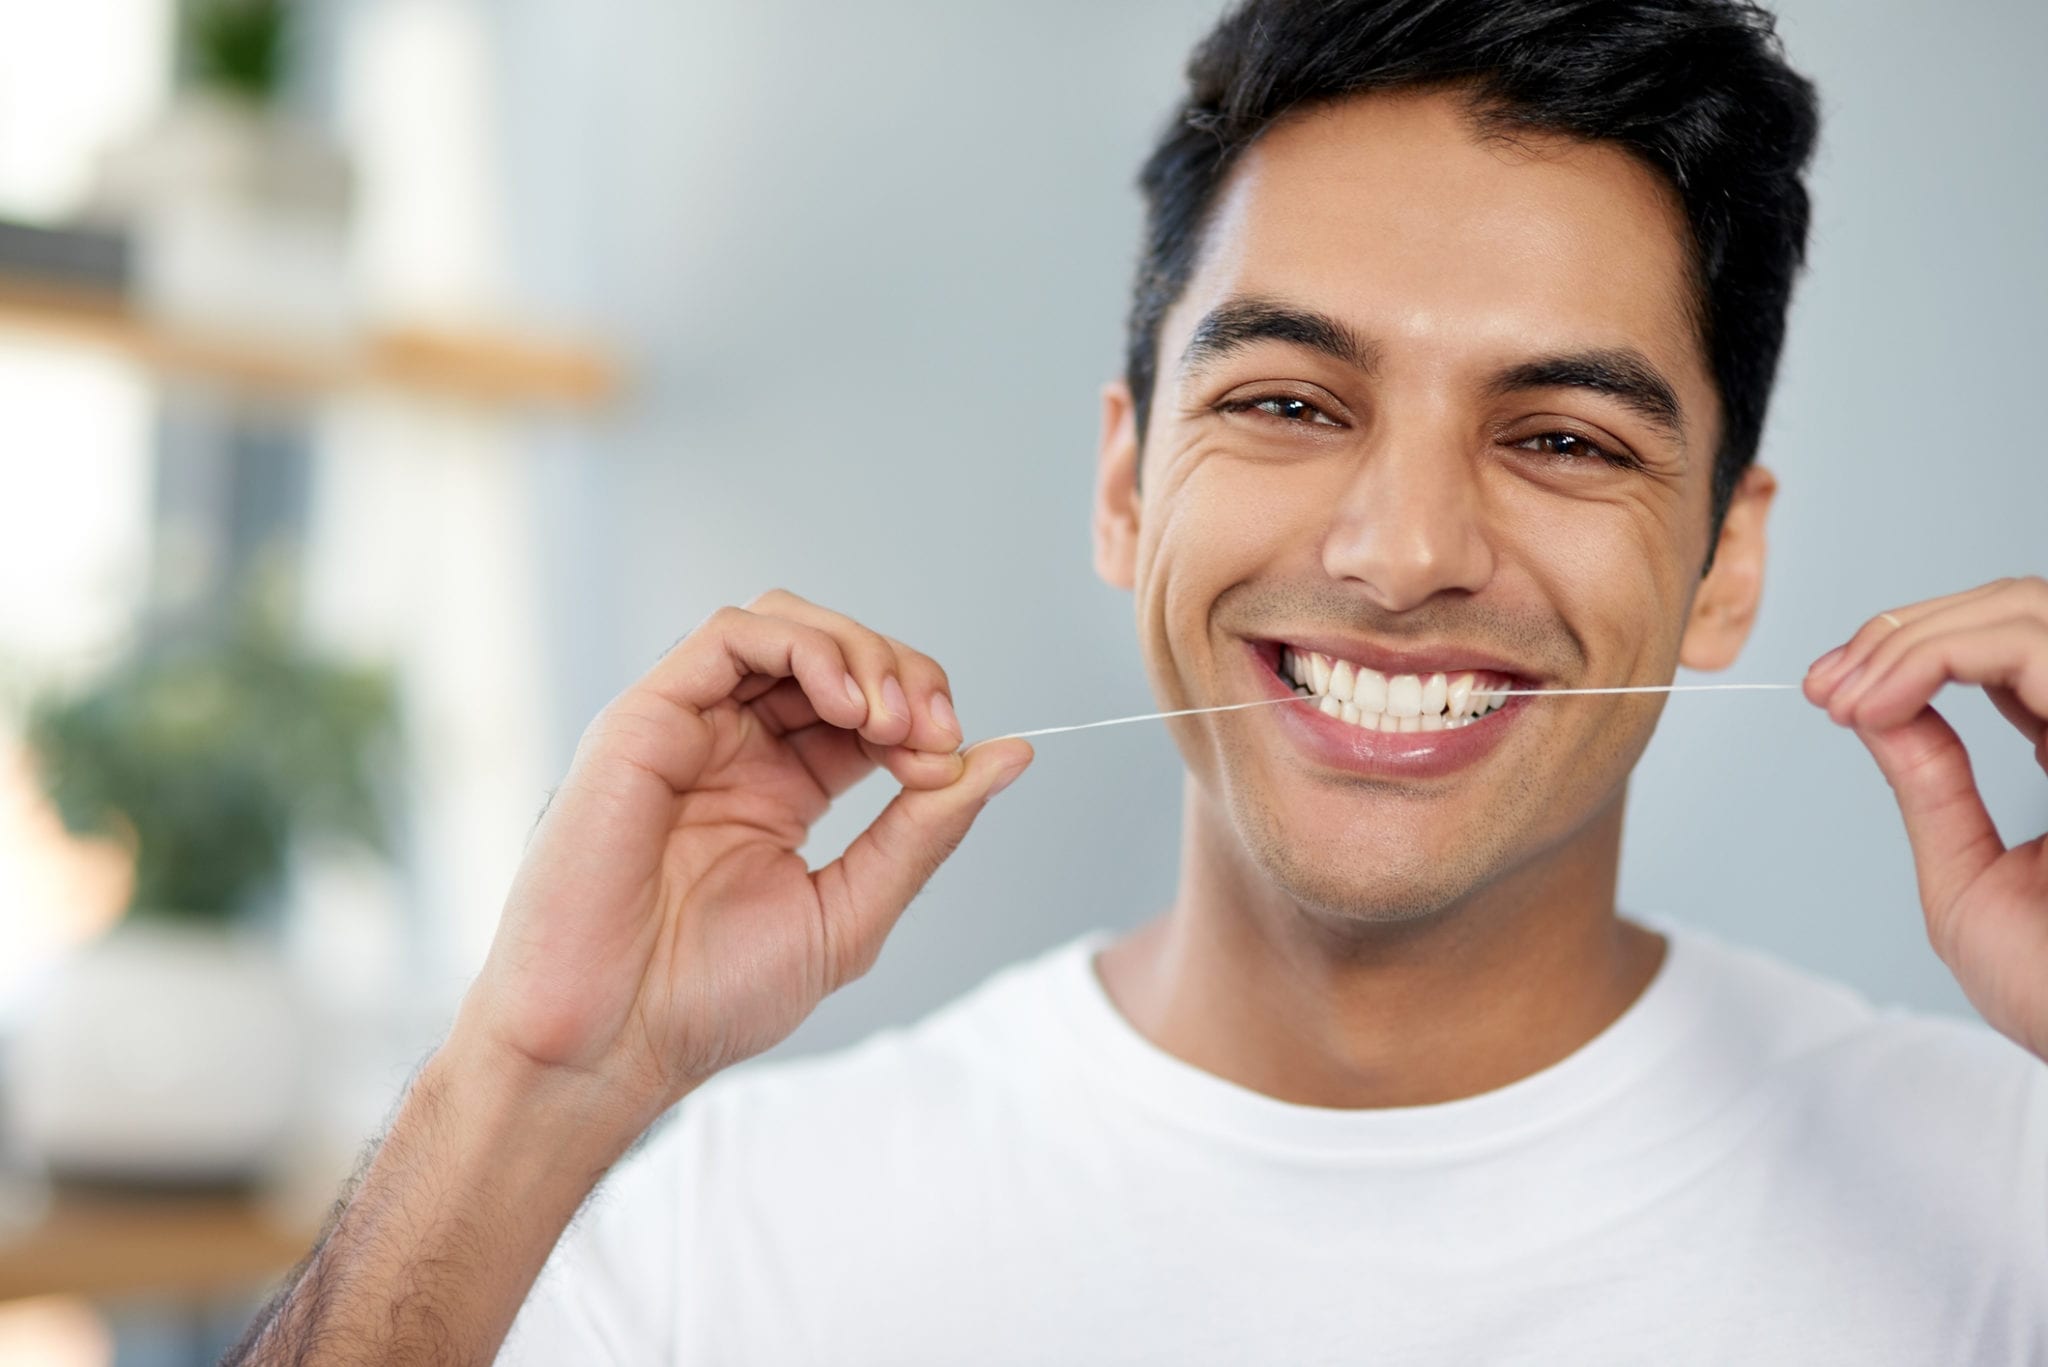 El odontólogo destaca algunos de los 6 beneficios de una buena higiene oral: mantener la salud bucal y salud general saludables.